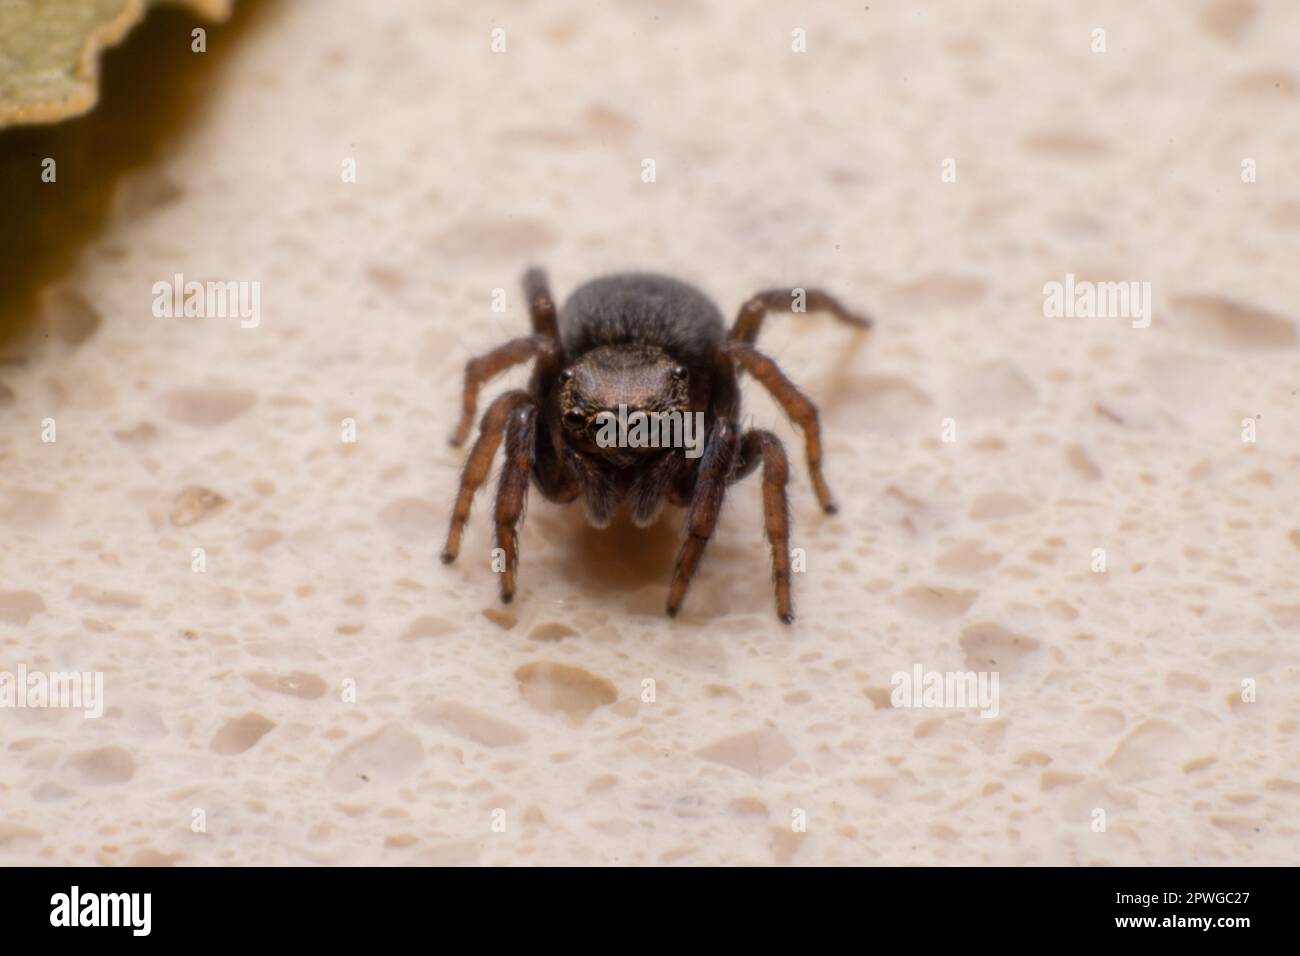 Makrofotografie mit braunen Spinnen. Spinnenaugen, kleine Spinnen. Insekten, natürliche Raubtiere. Stockfoto